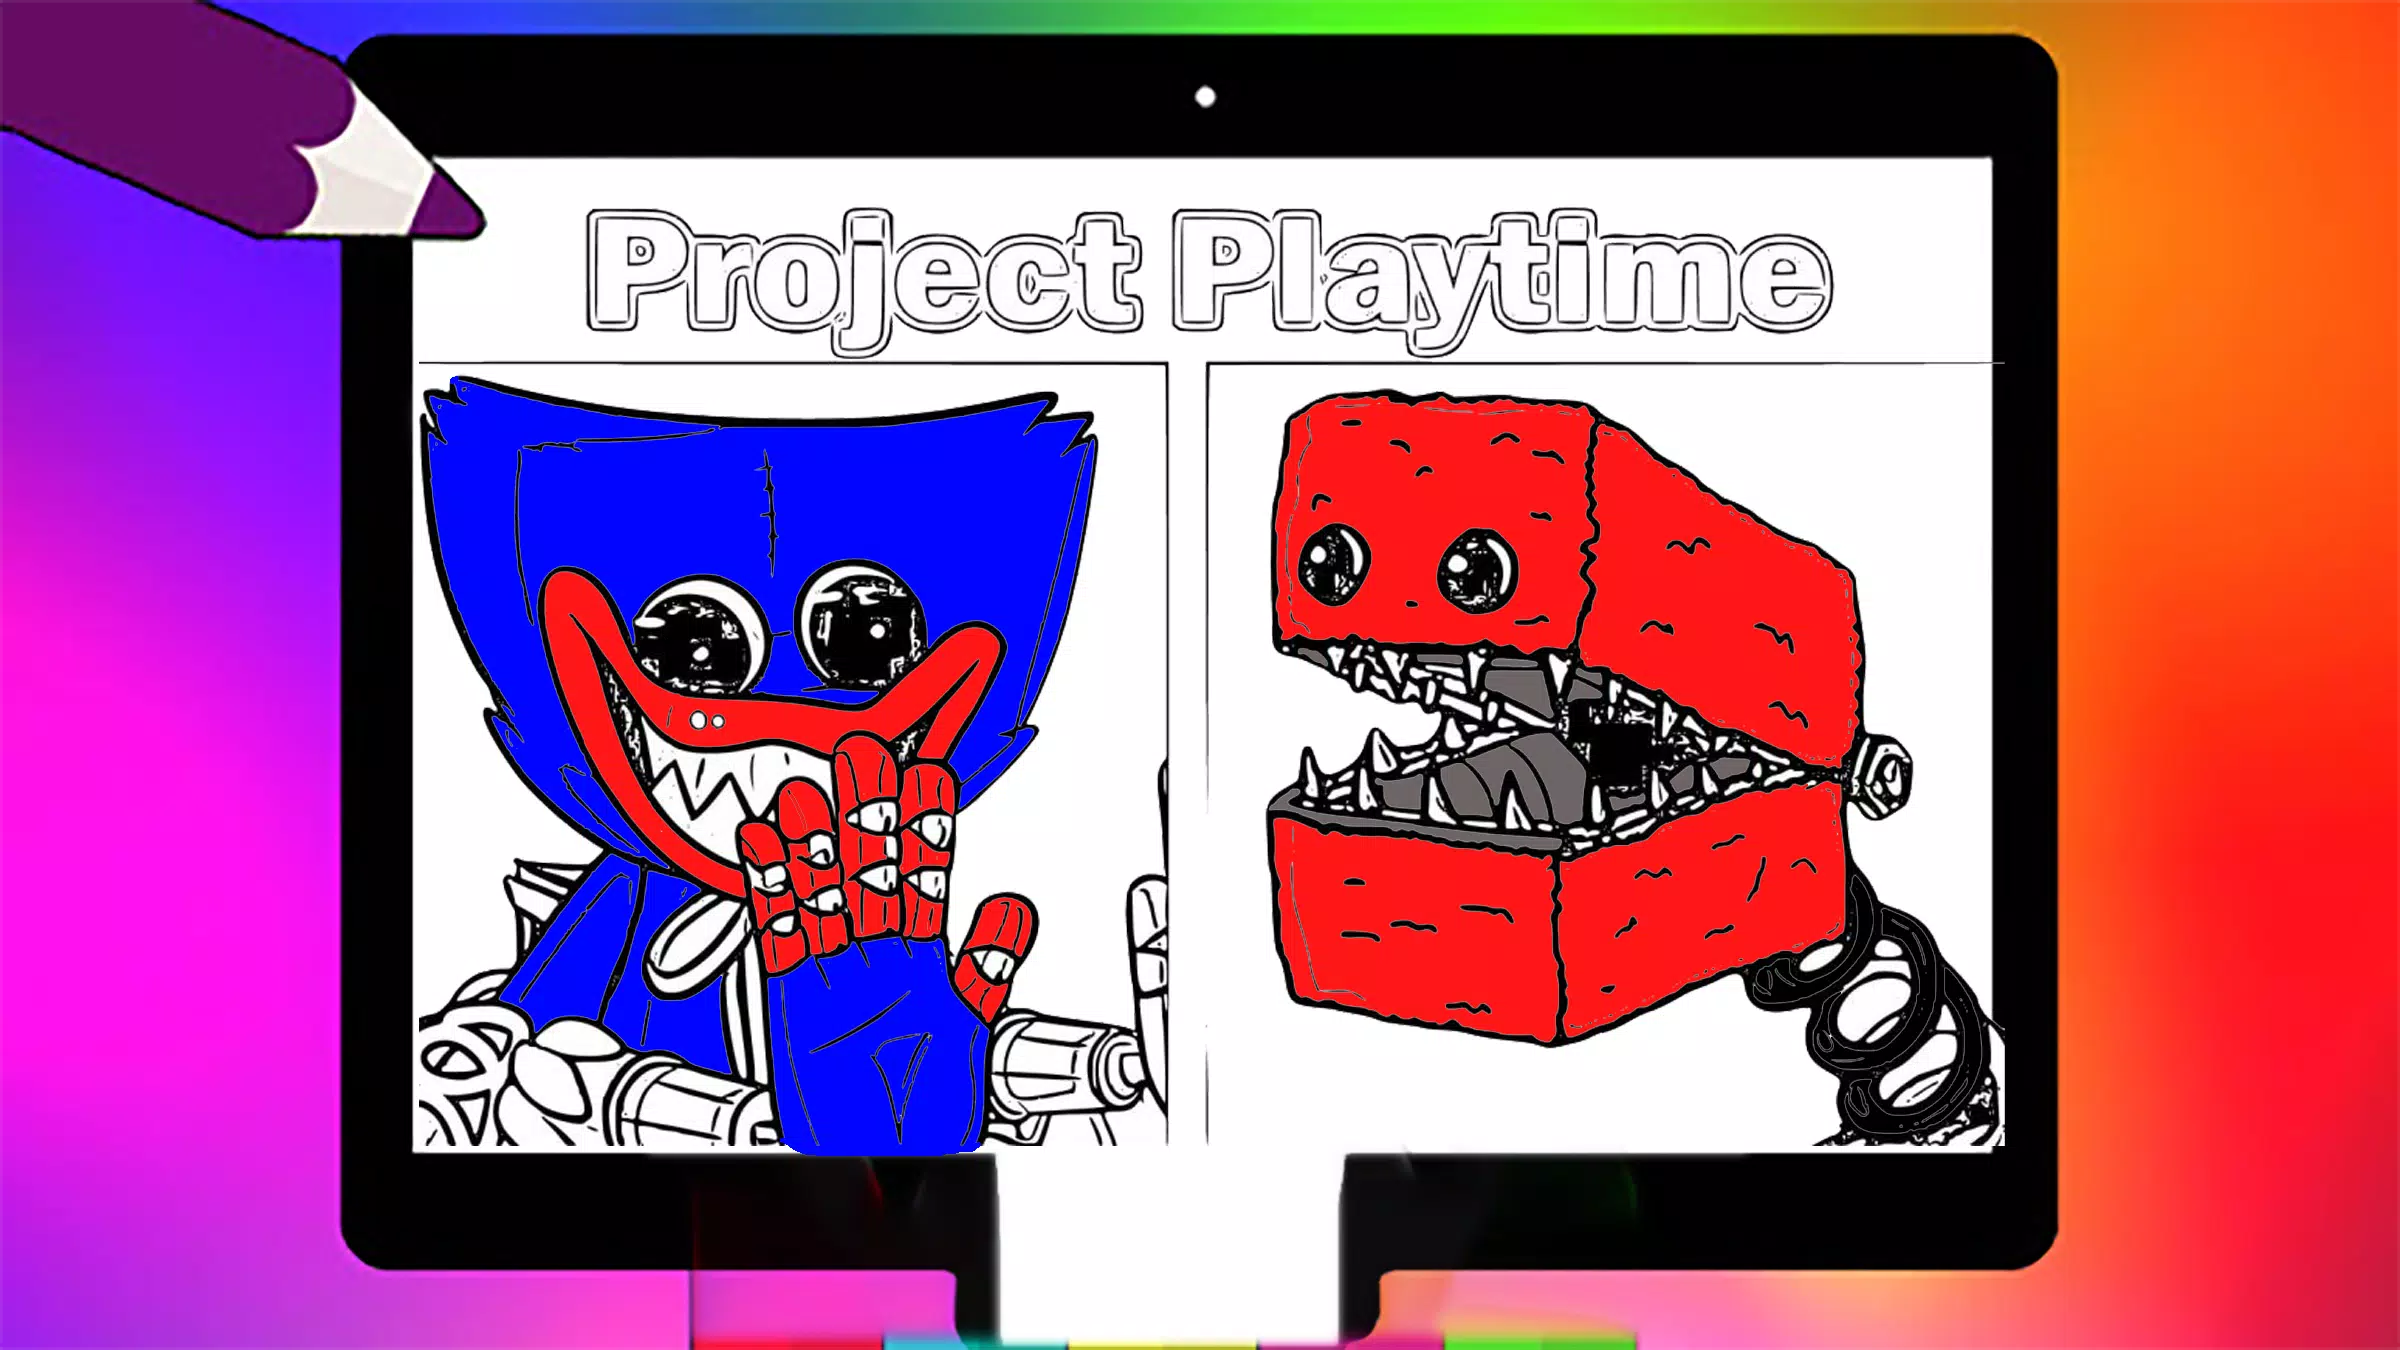 Poppy Playtime Coloring Book  Jogue Agora Online Gratuitamente